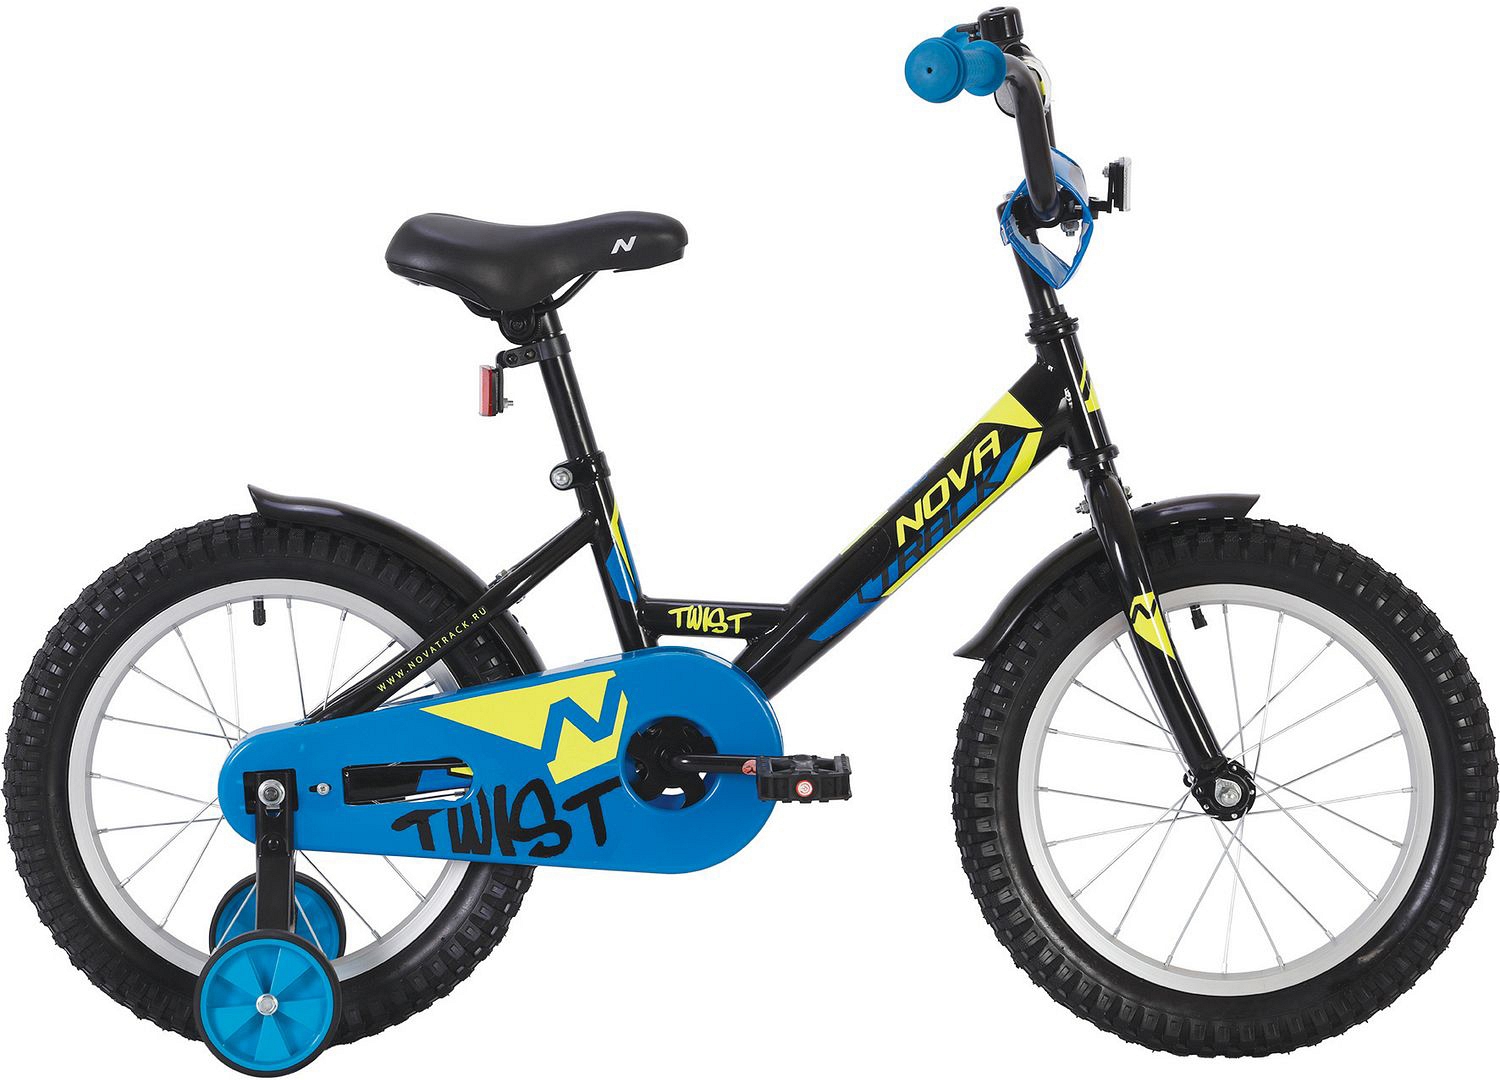  Отзывы о Детском велосипеде Novatrack Twist 12 2020